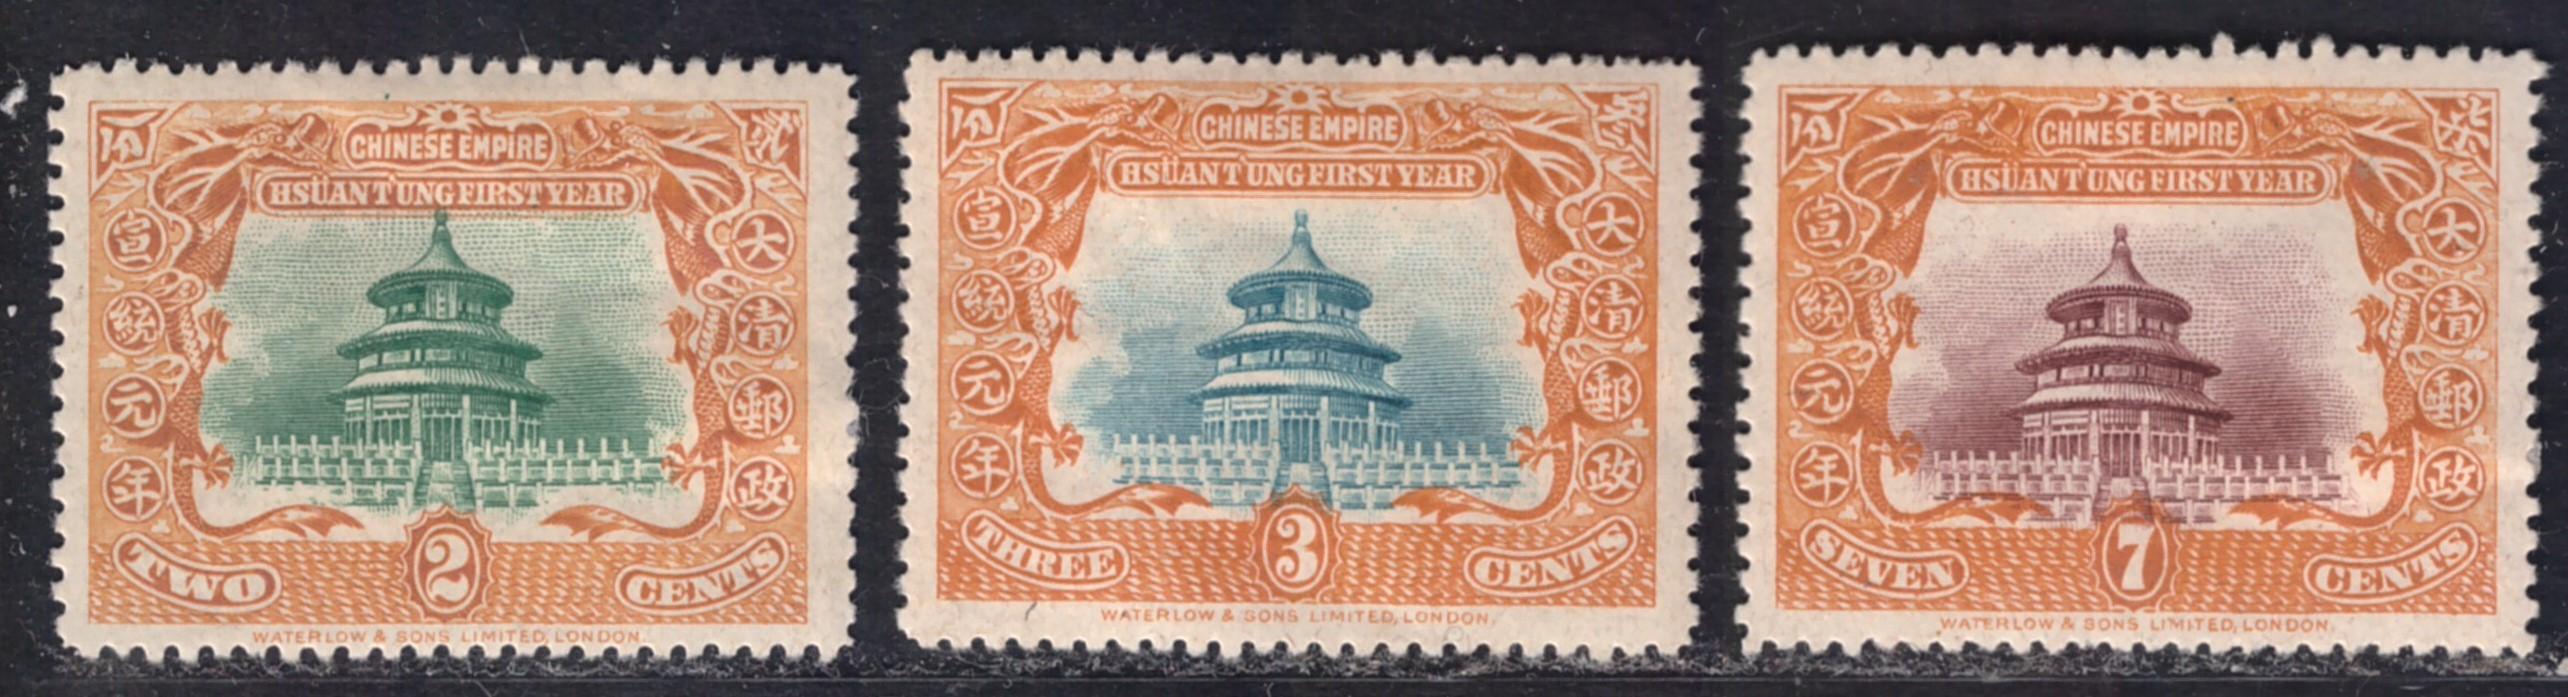 CHINA, Hsuan Tung 1st Year 1909 *